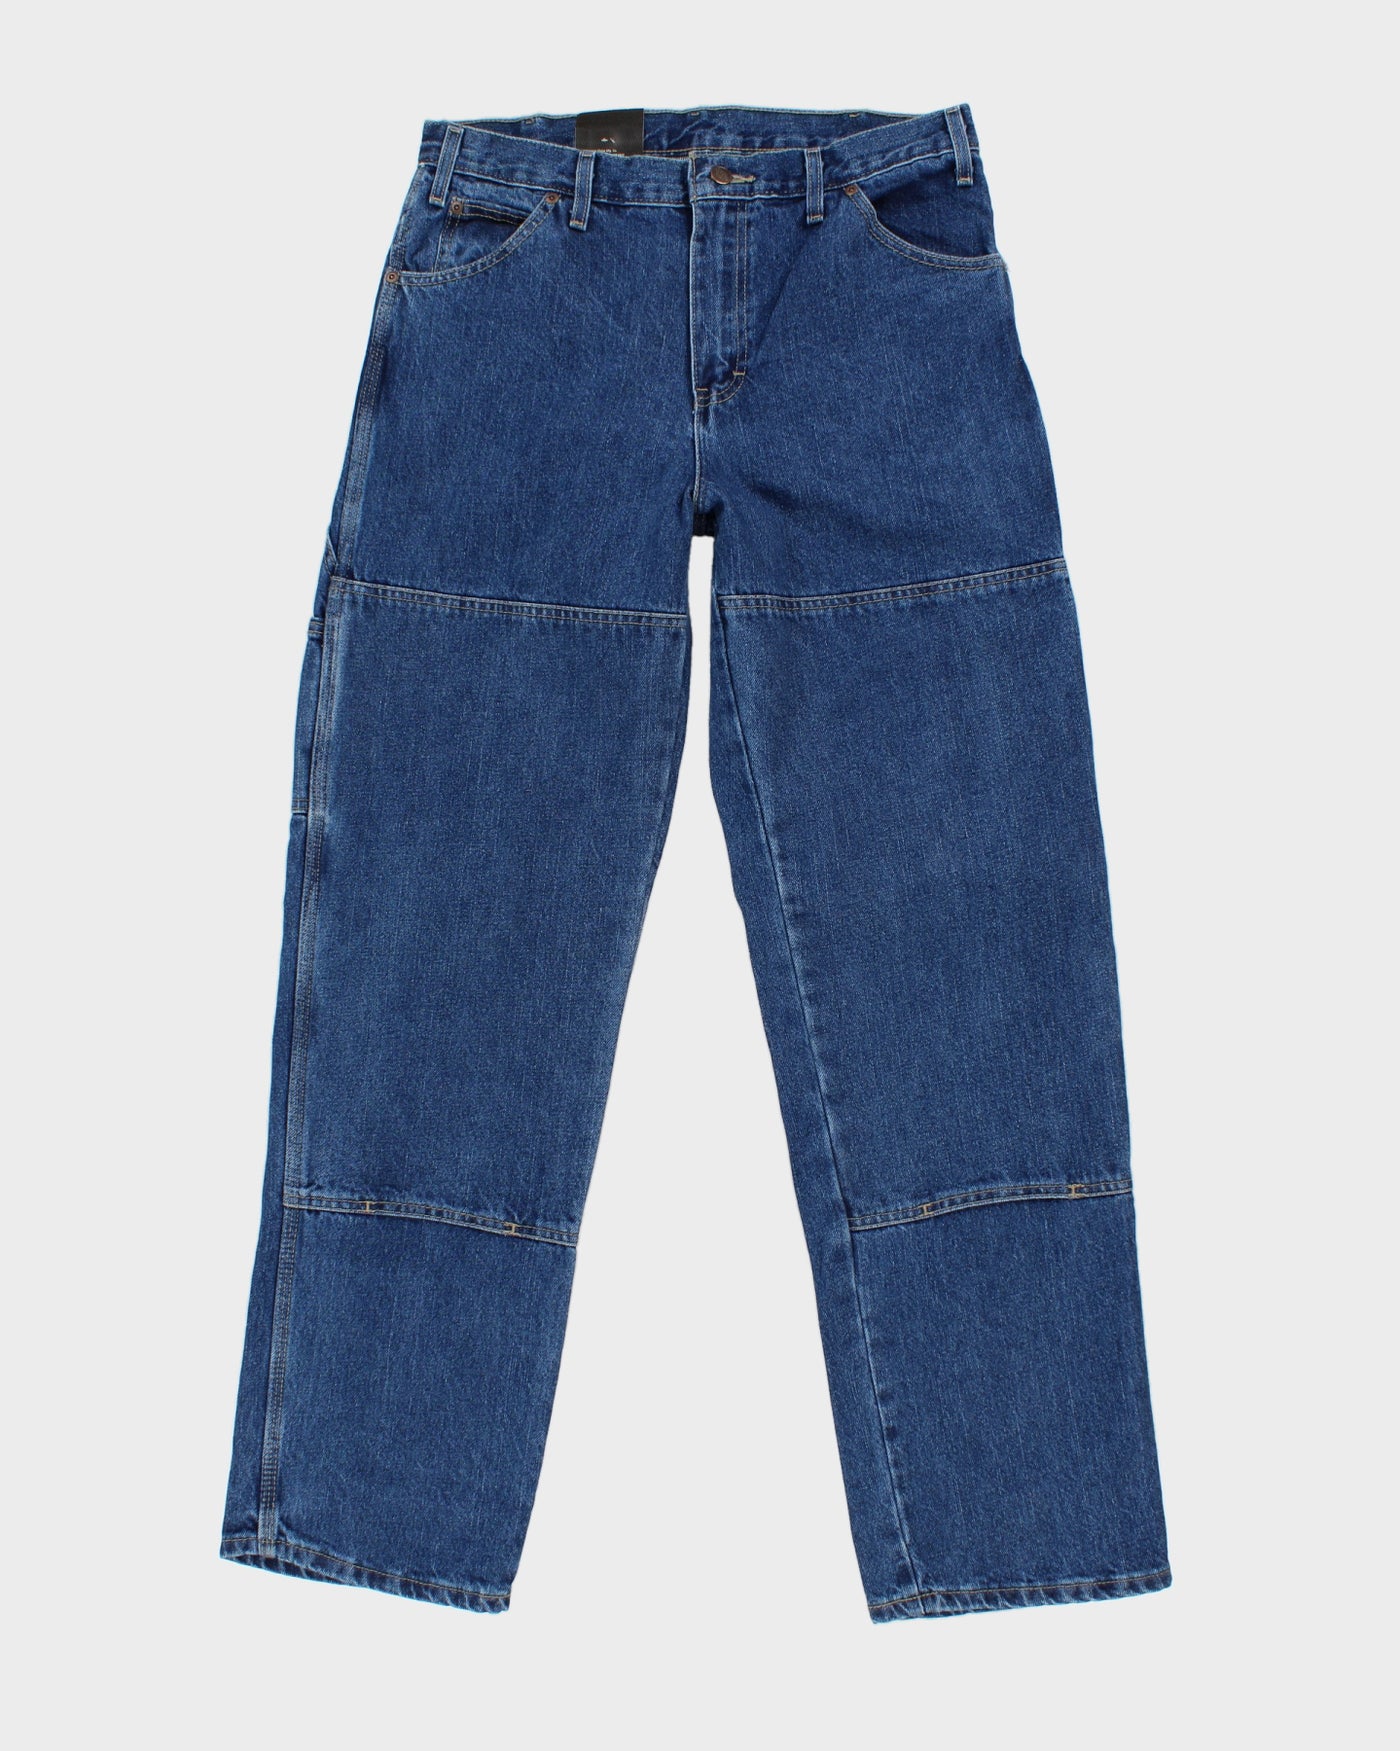 Medium Wash Blue Denim Dickies Jeans - W31 L32